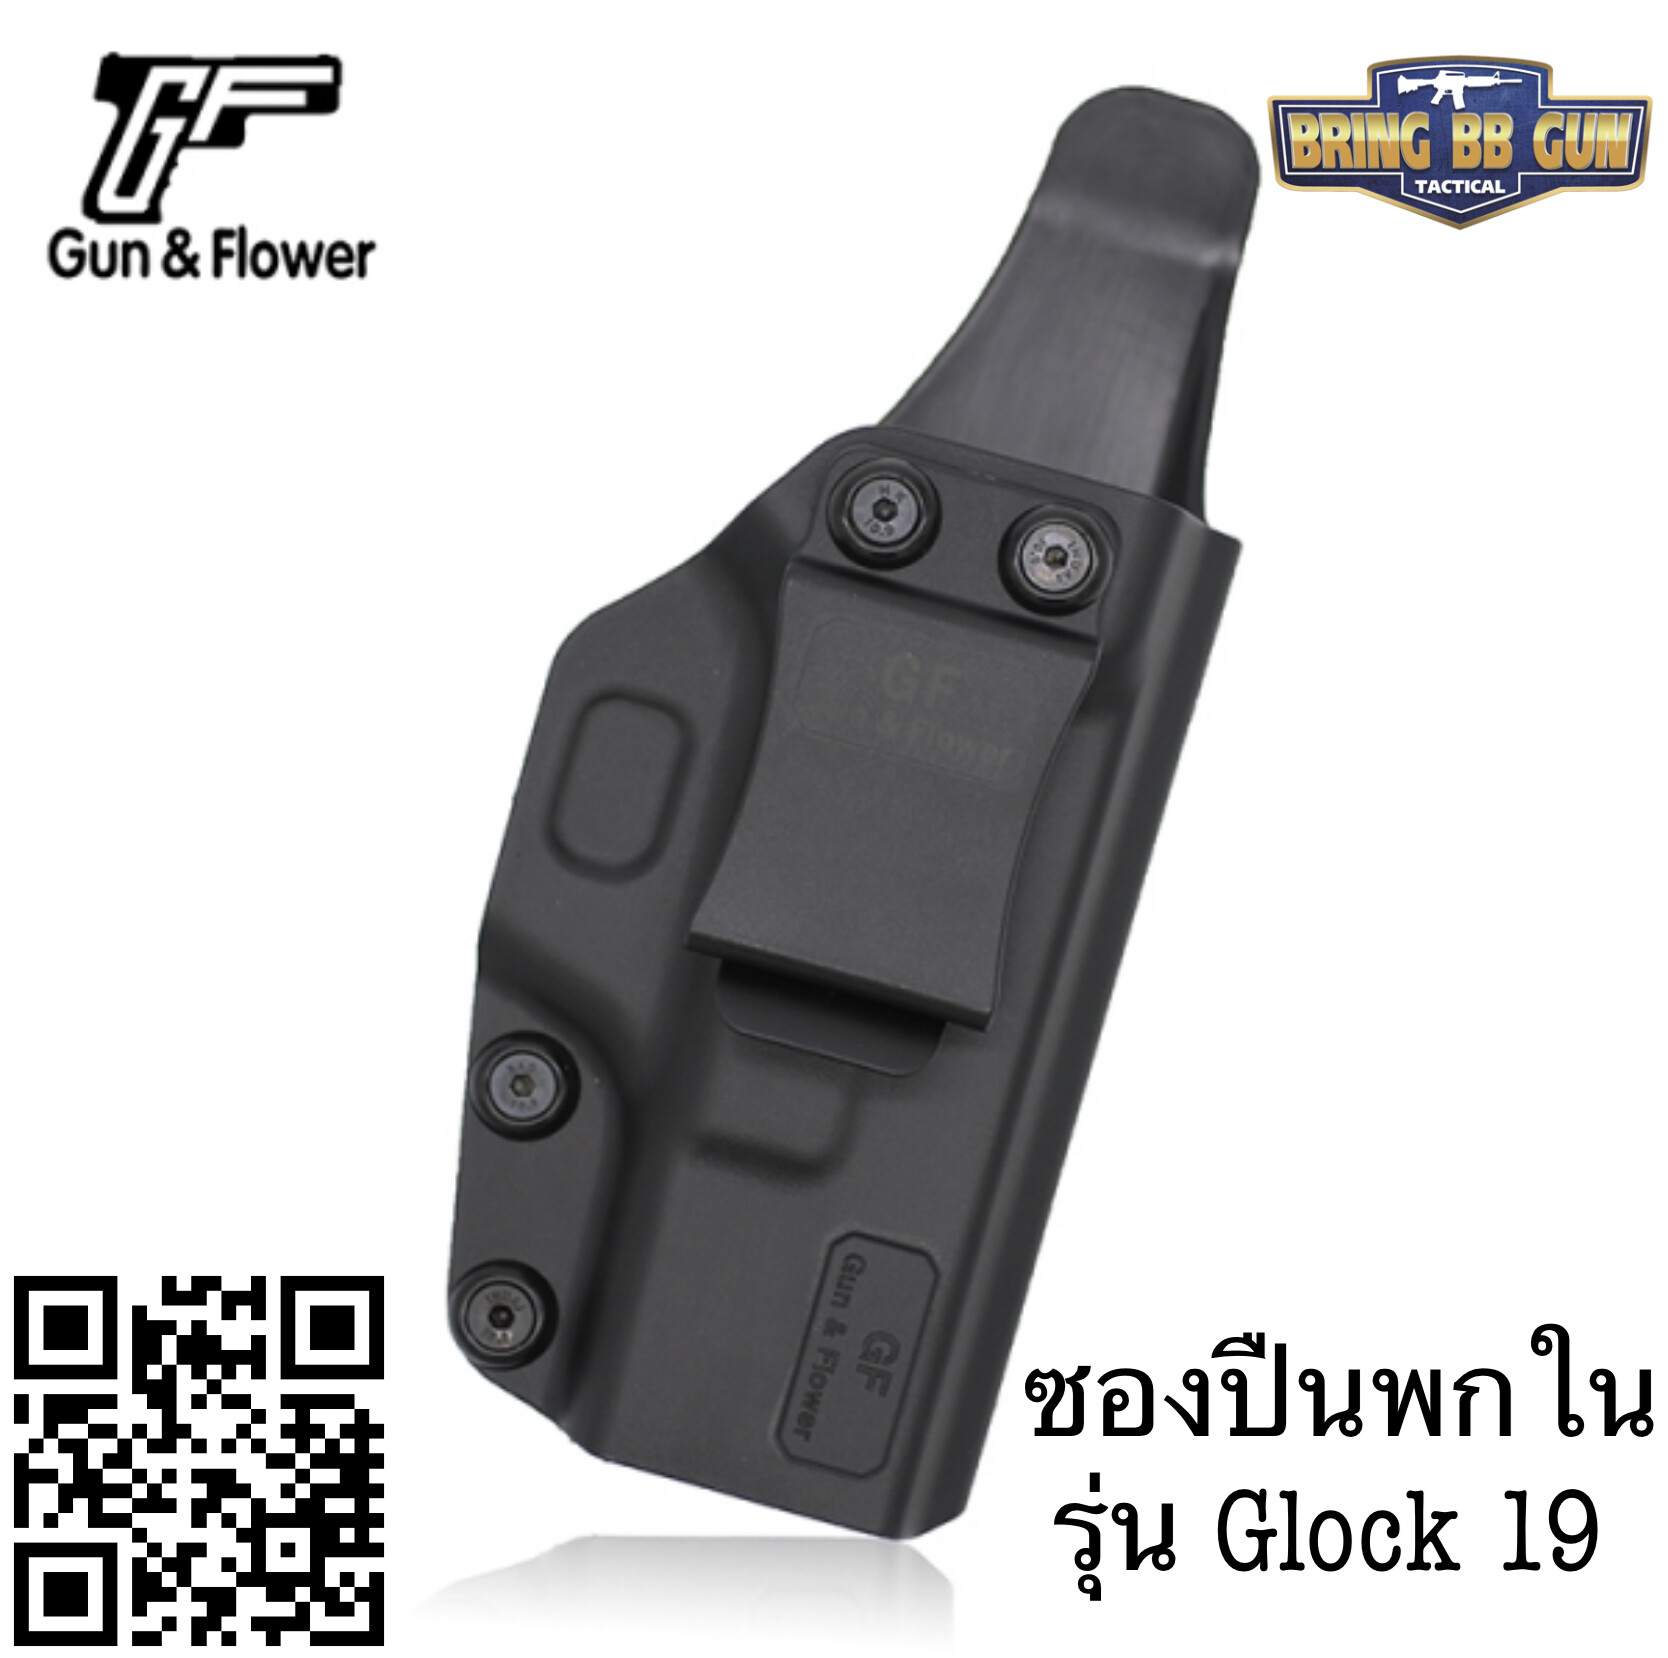 ซองพกใน IWB Polymer ยี่ห้อ กัน แอนด์ ฟลาวเวอร์ (Tactical Polymer IWB Holster)  ผลิตจาก Nylon PA66 แข็งแรง ทนทาน  มี2รุ่นให้เลือก #รุ่น Glock 19 (19/23/32) #รุ่น Sig Sauer P365